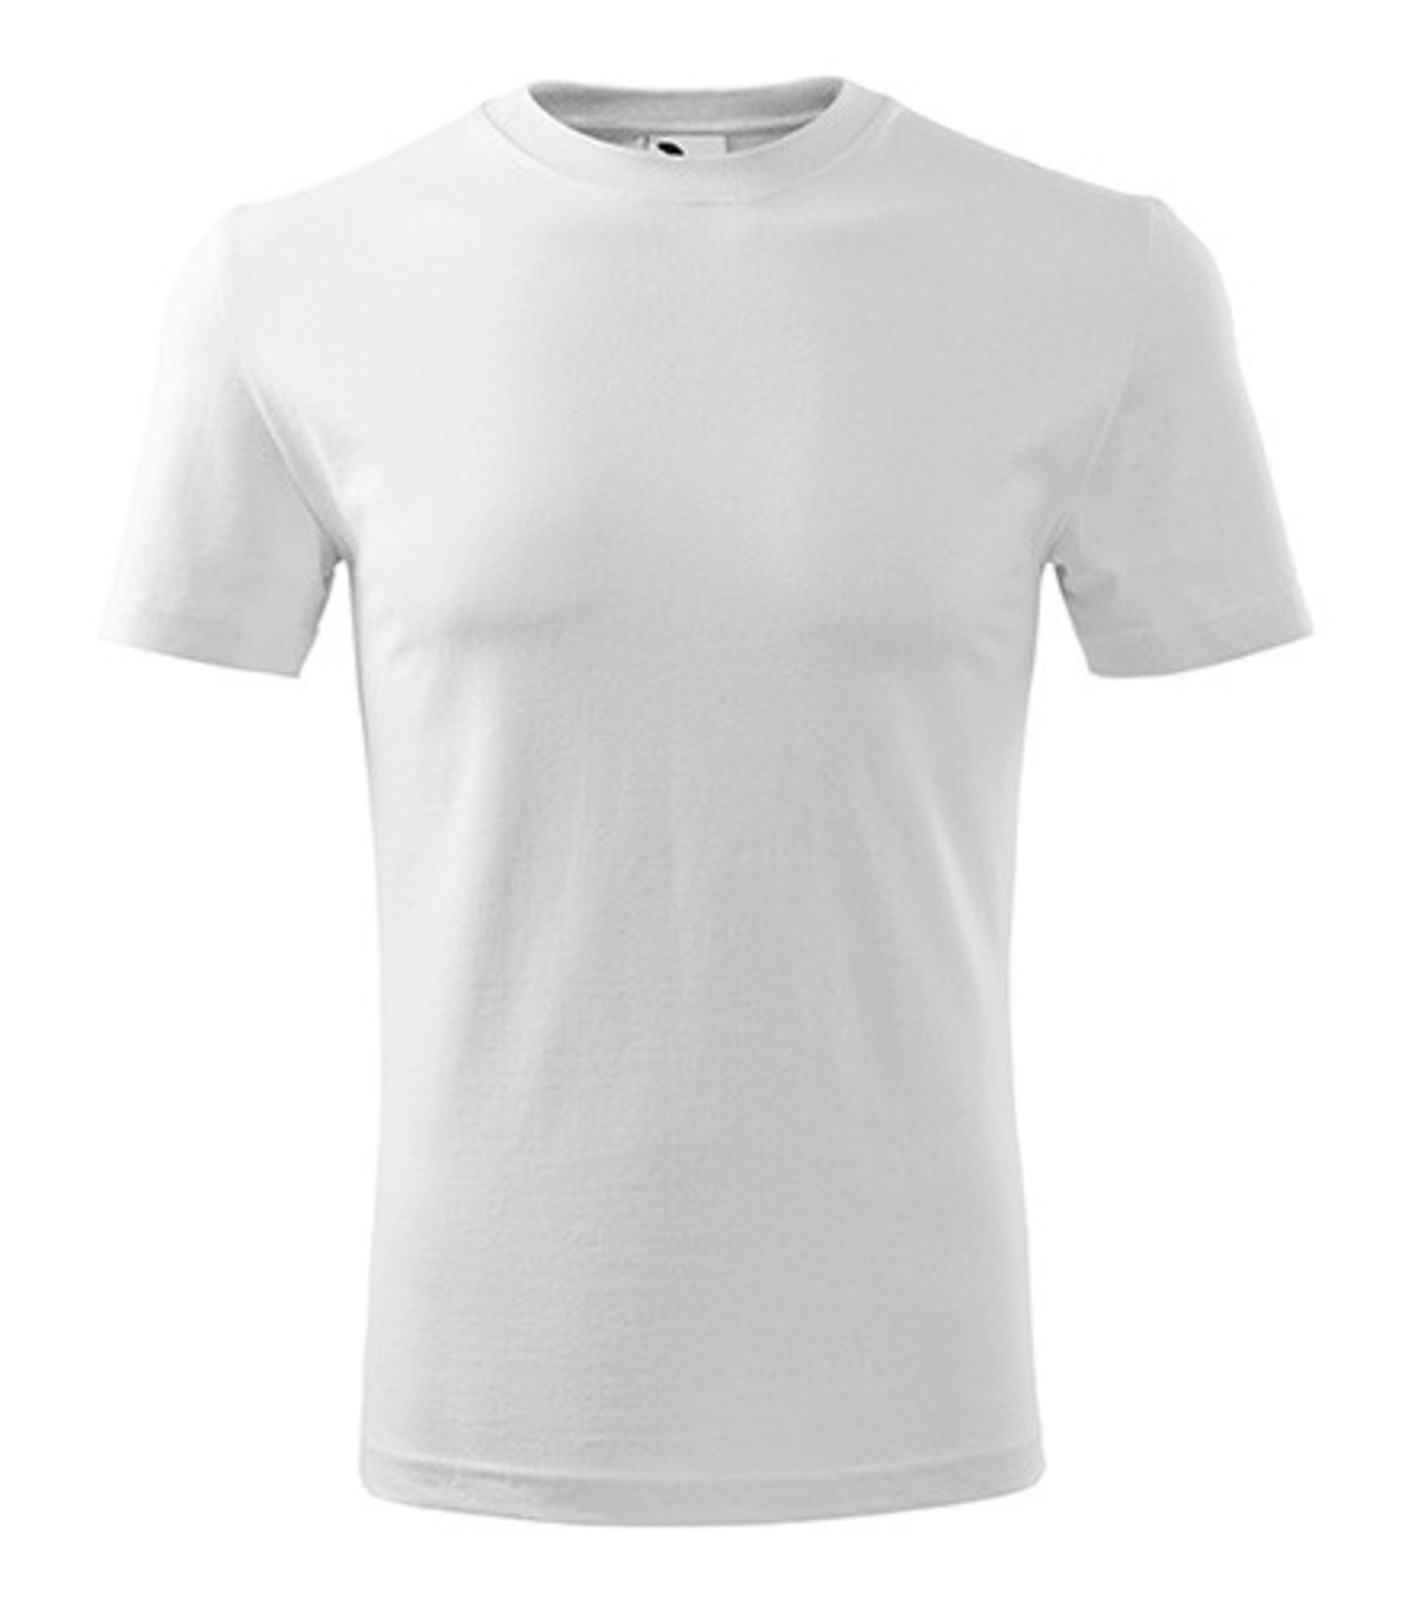 Pánske tričko Adler Classic New 132 - veľkosť: L, farba: biela